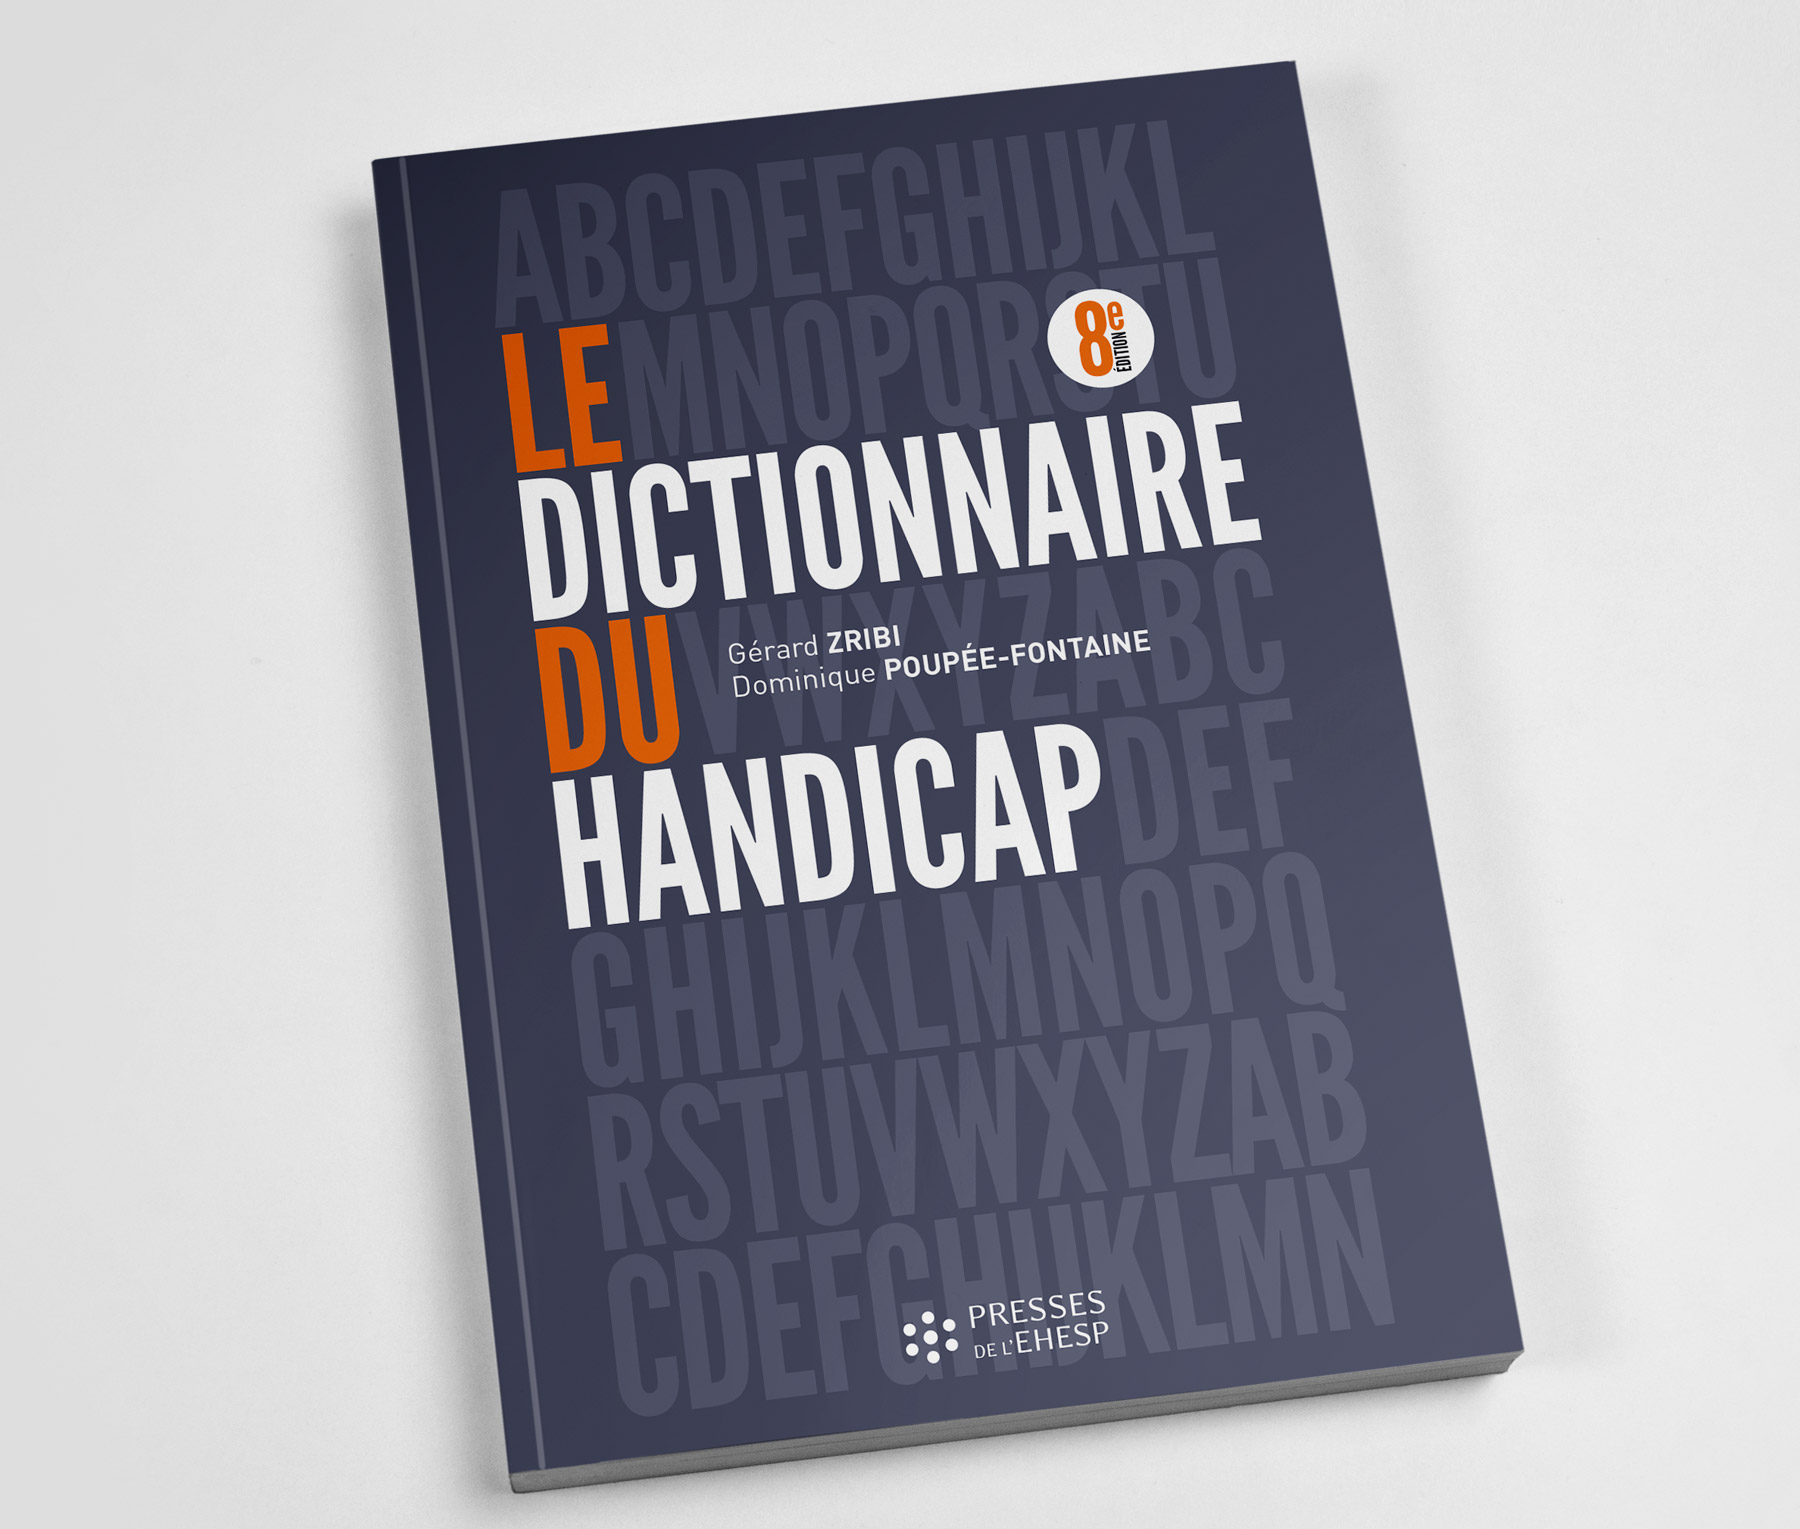 Publication Le dictionnaire du handicap par Gérard Zribi et Dominique Poupée-Fontaine